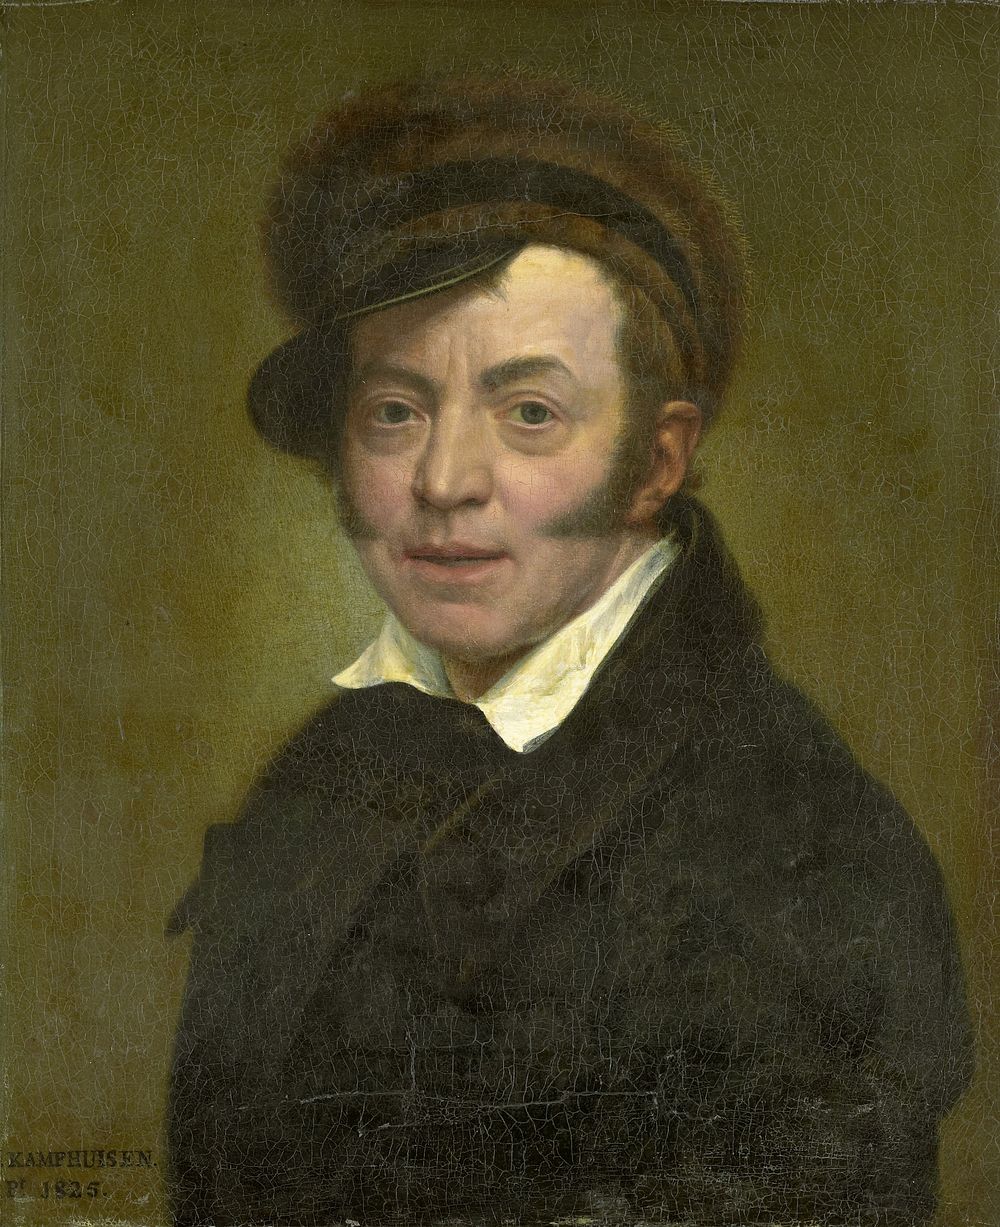 Self-Portrait (1825) by Jan Kamphuijsen